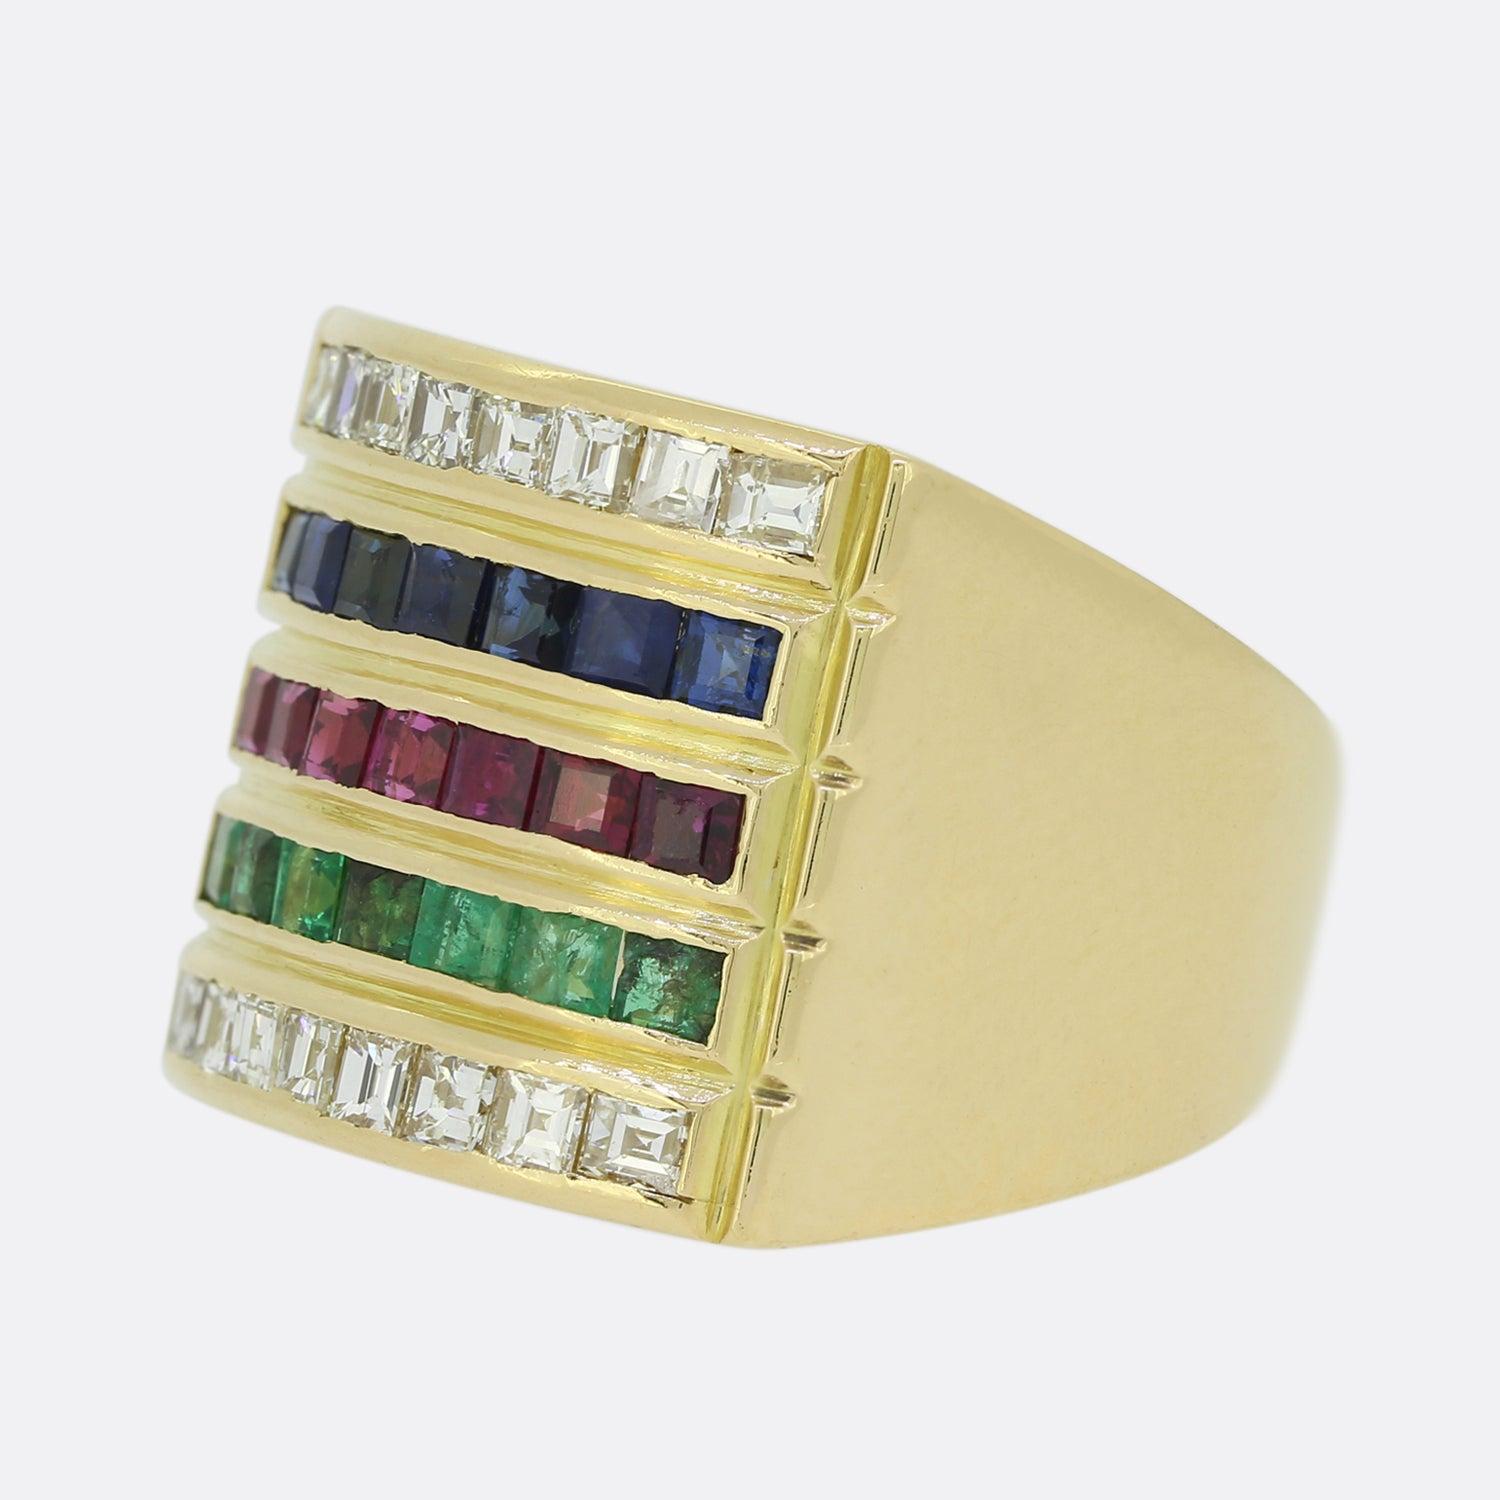 Dies ist ein Vintage 18ct Gelbgold Multi Edelstein Ring. Die Edelsteine bestehen aus Diamanten im Carre-Schliff, Saphiren, Rubinen und Smaragden. Sie sind auf fünf Reihen verteilt und bieten einen lustigen und farbenfrohen Look, der bequem am Finger